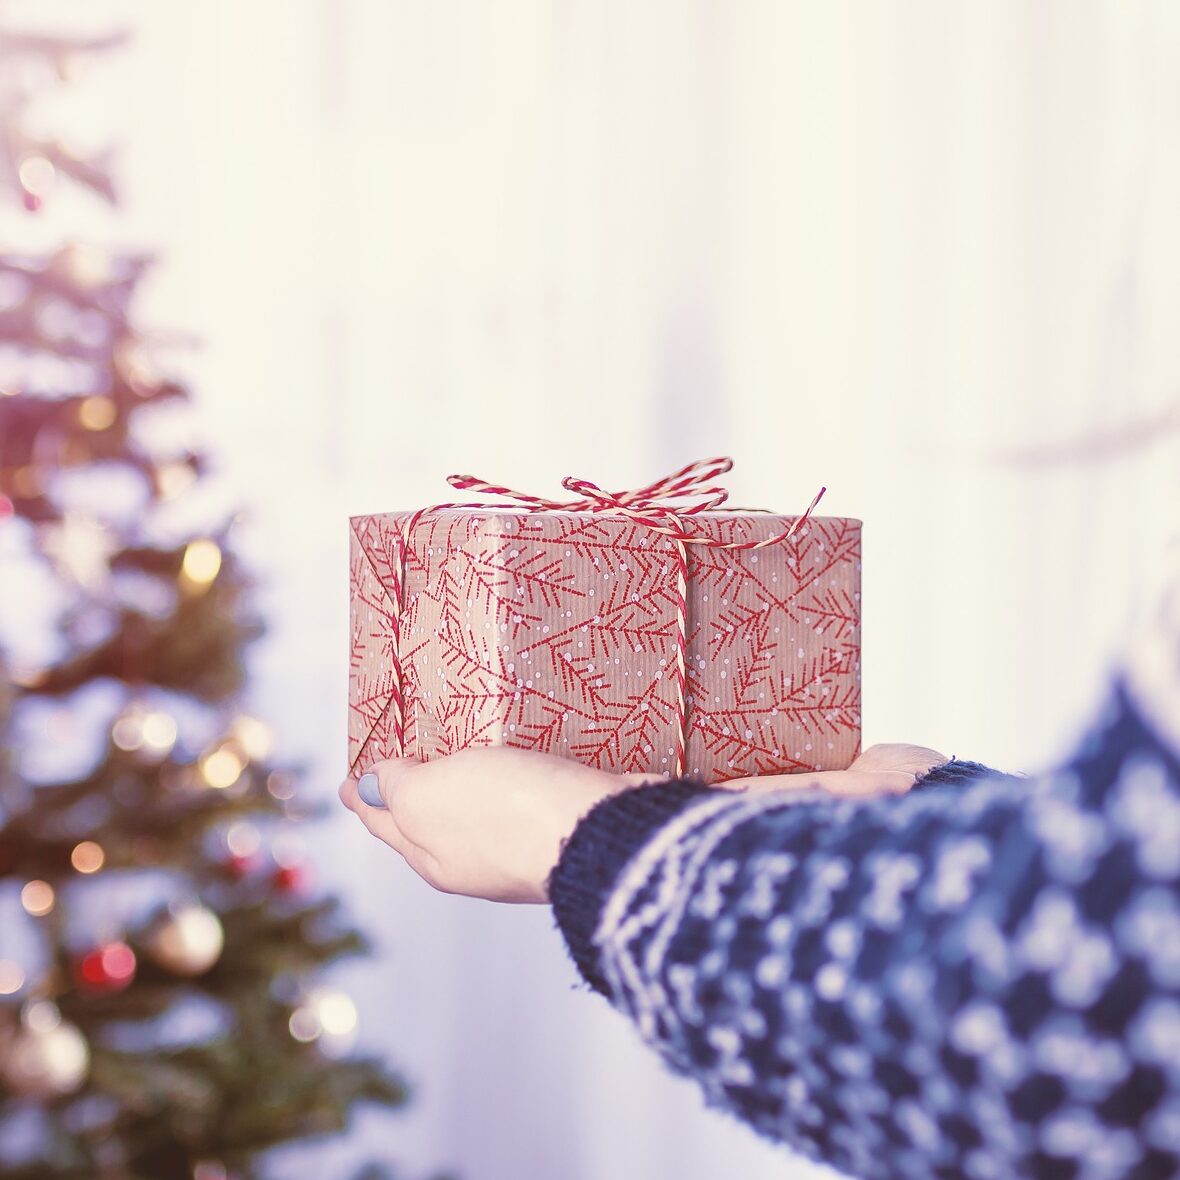 julegave gives til juletrae